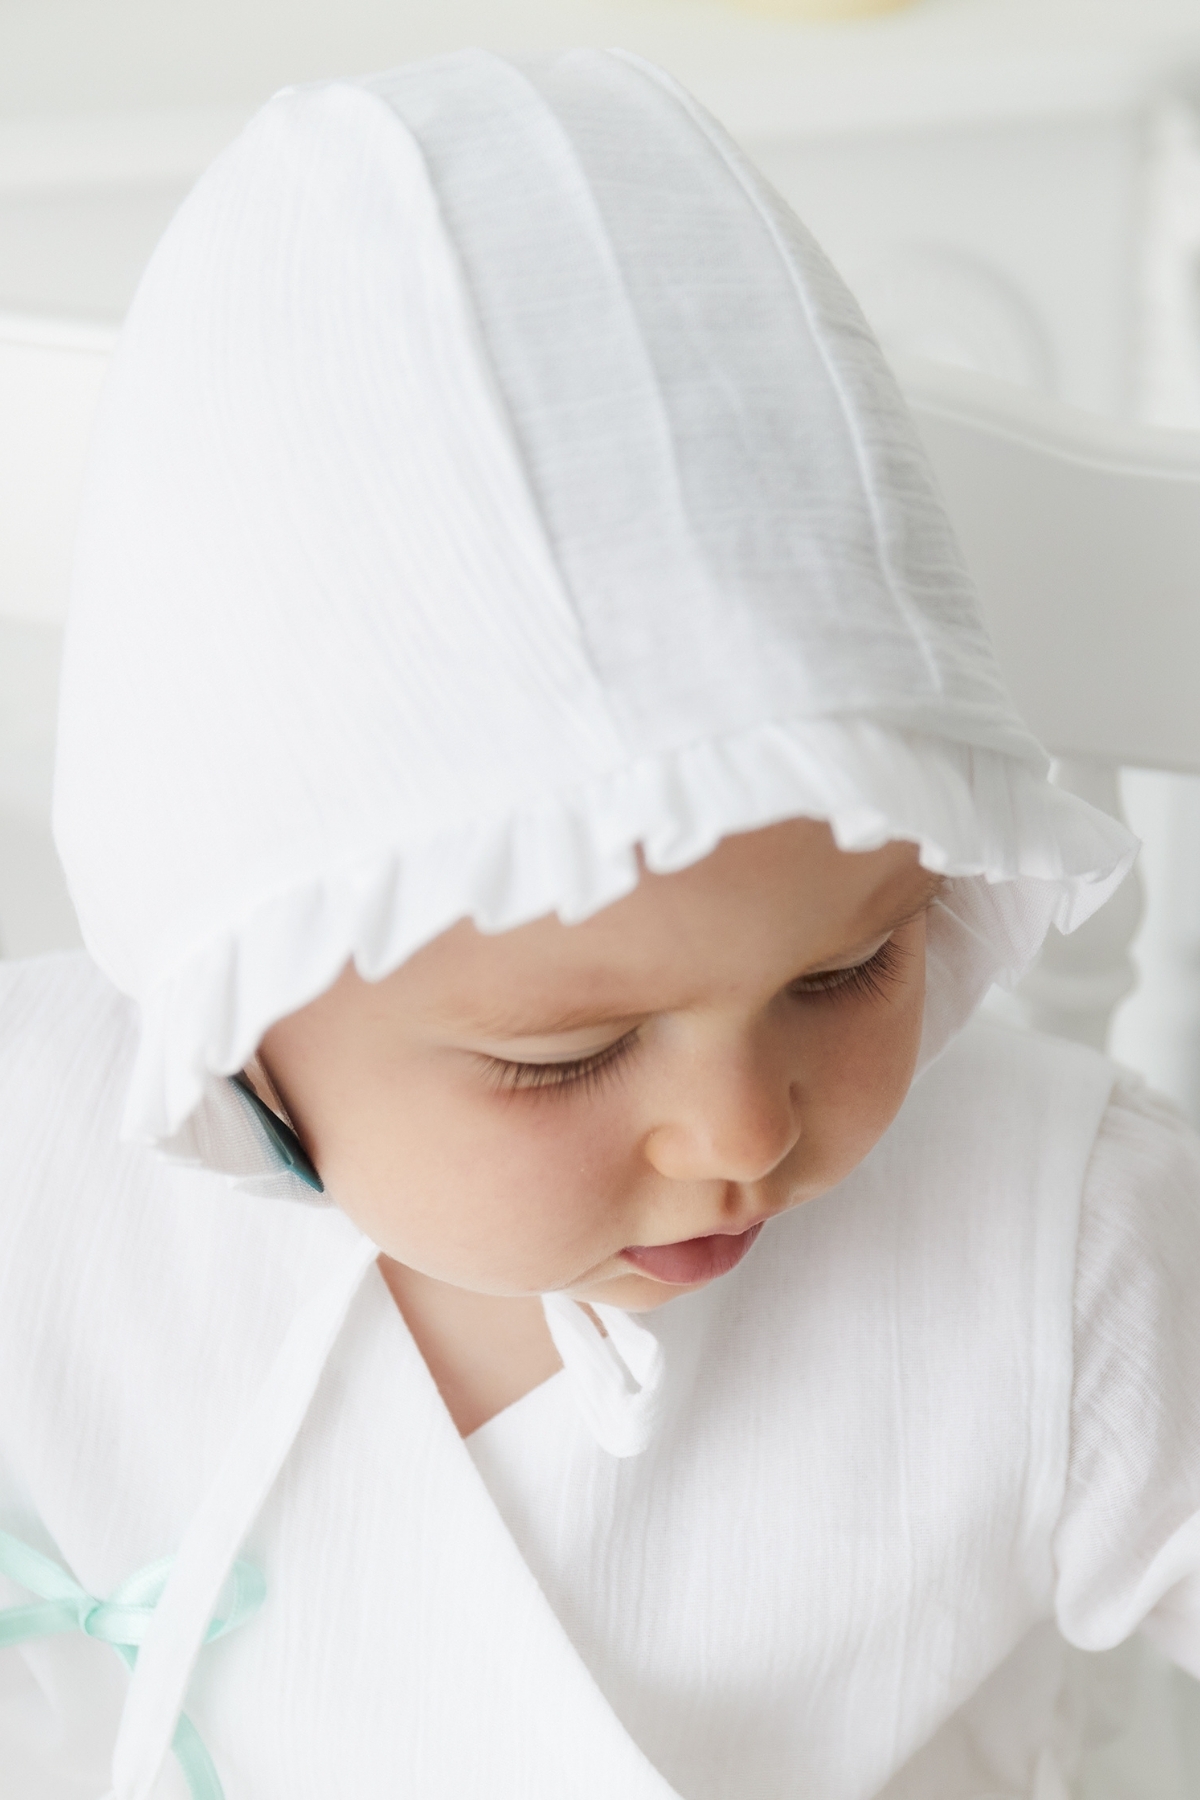 Şile Bezi Bebek Beyaz Bonnet Fırfırlı Müslin Şapka